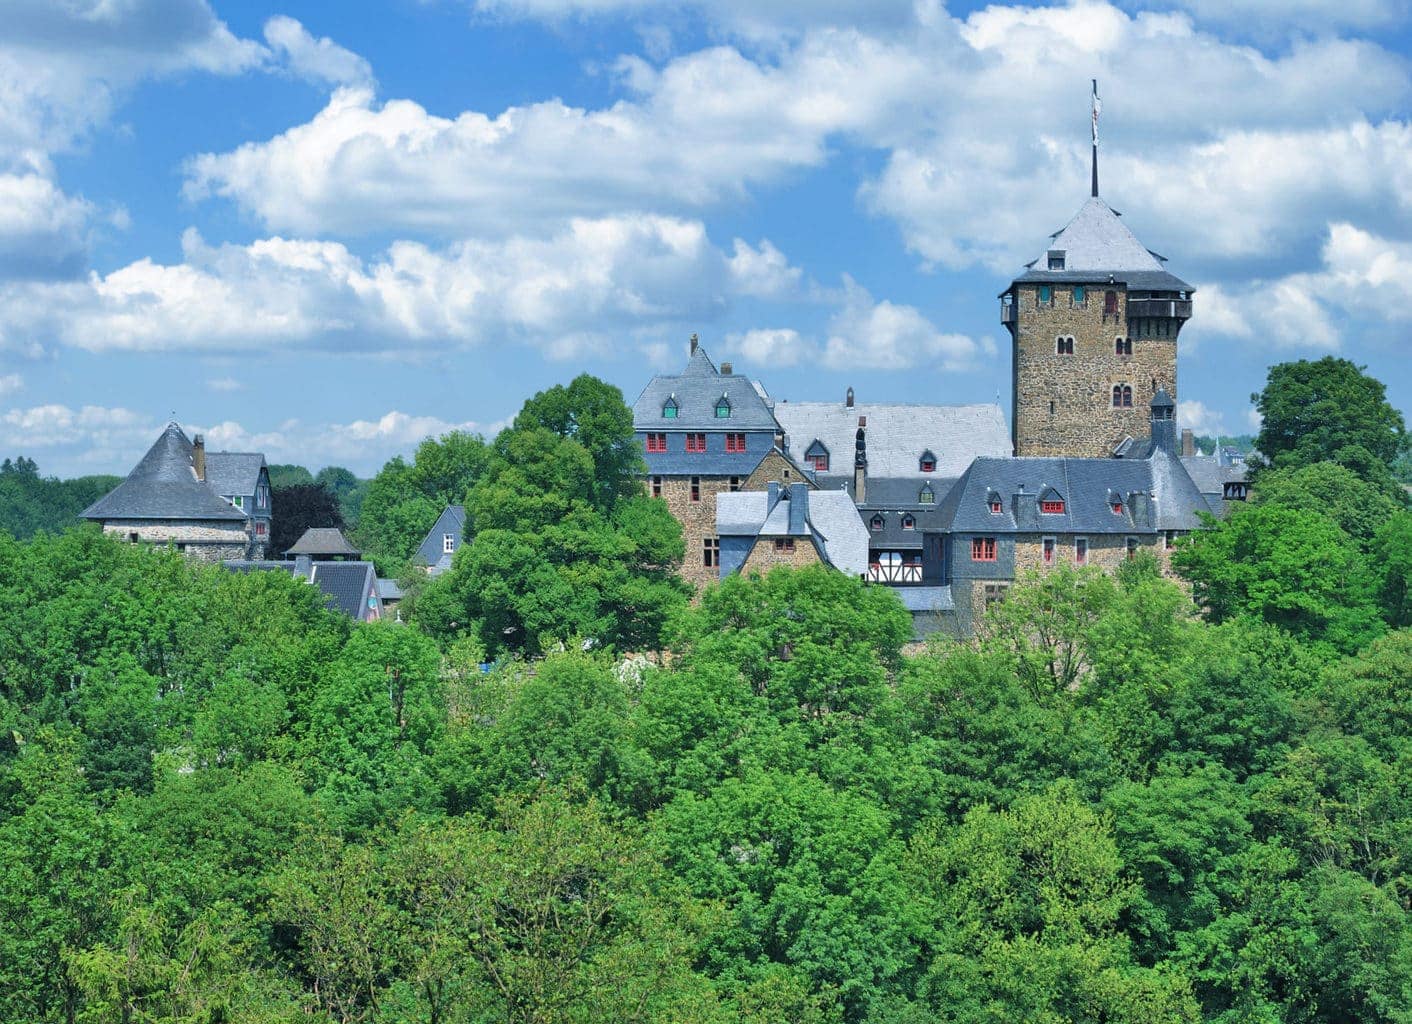 Schloss Burg Solingen in het bergische land in Duitsland met bomen